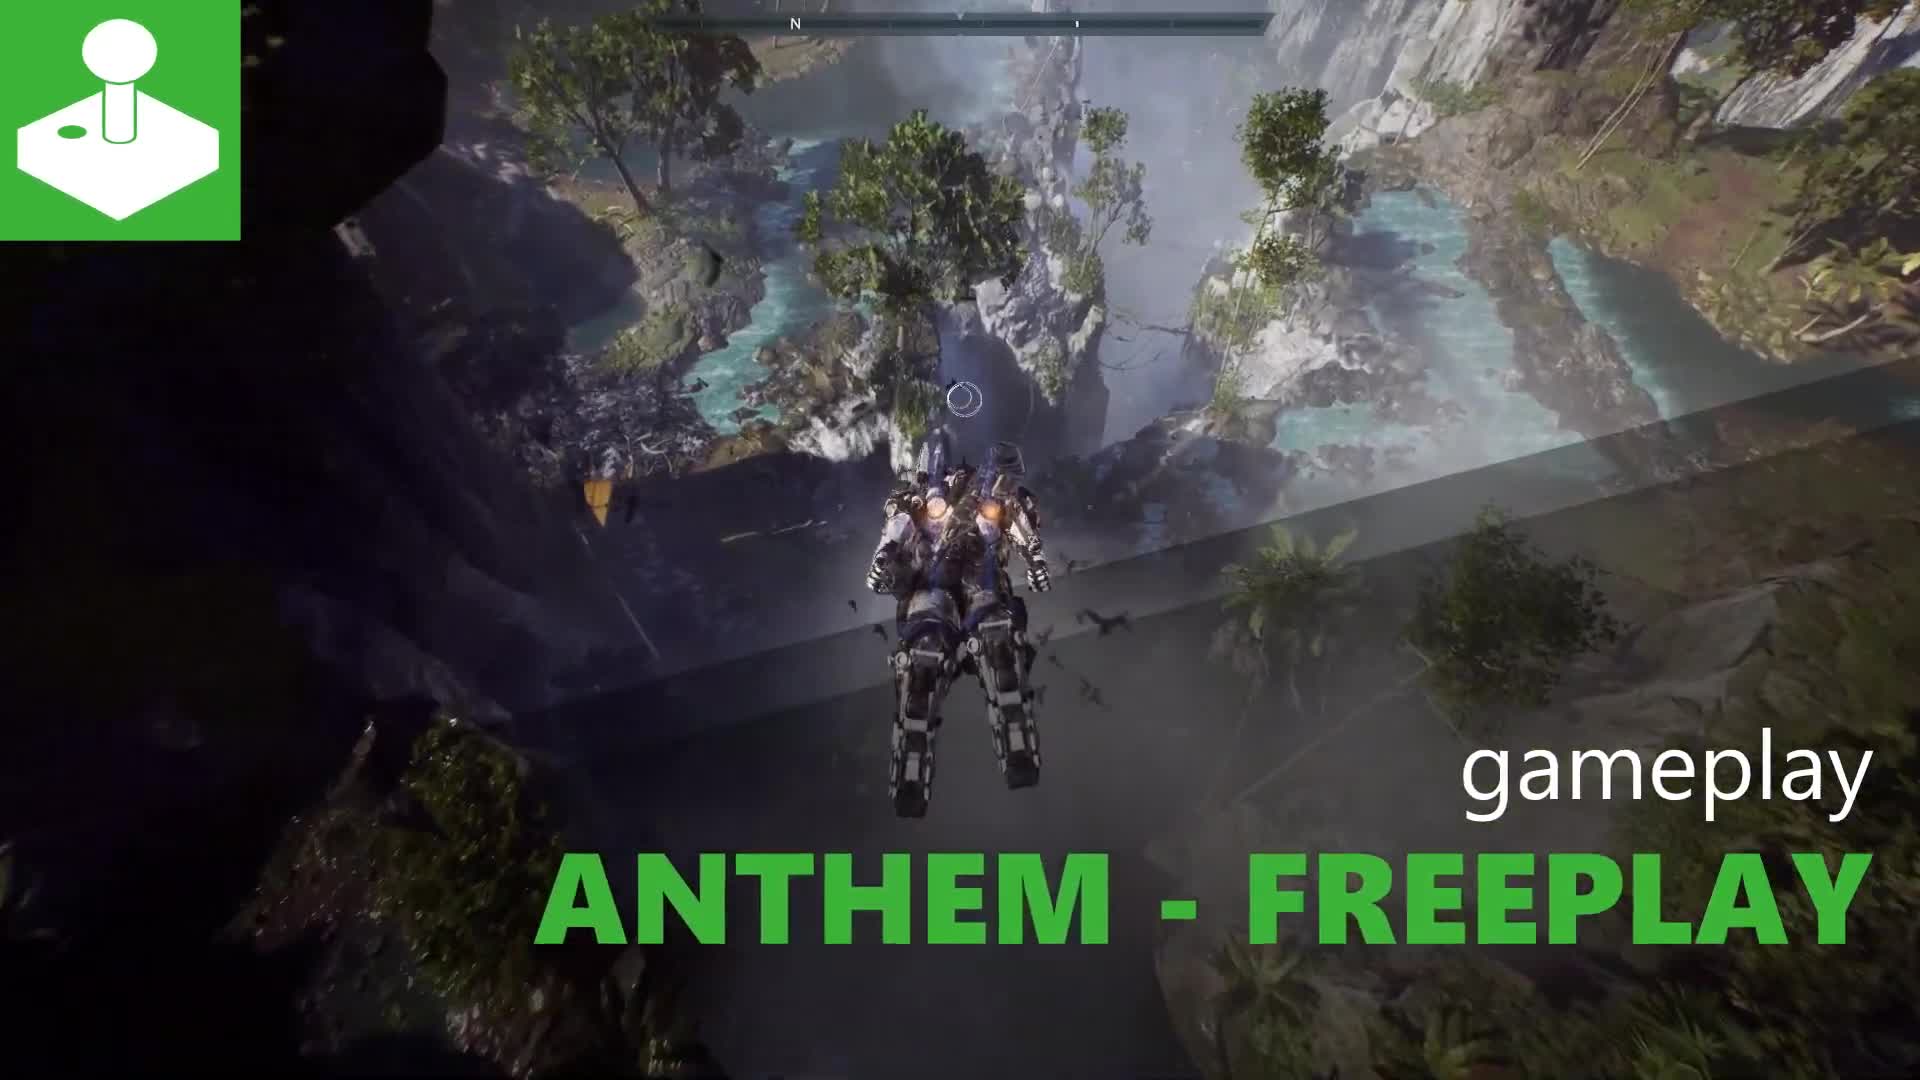 Anthem - Freeplay Gameplay